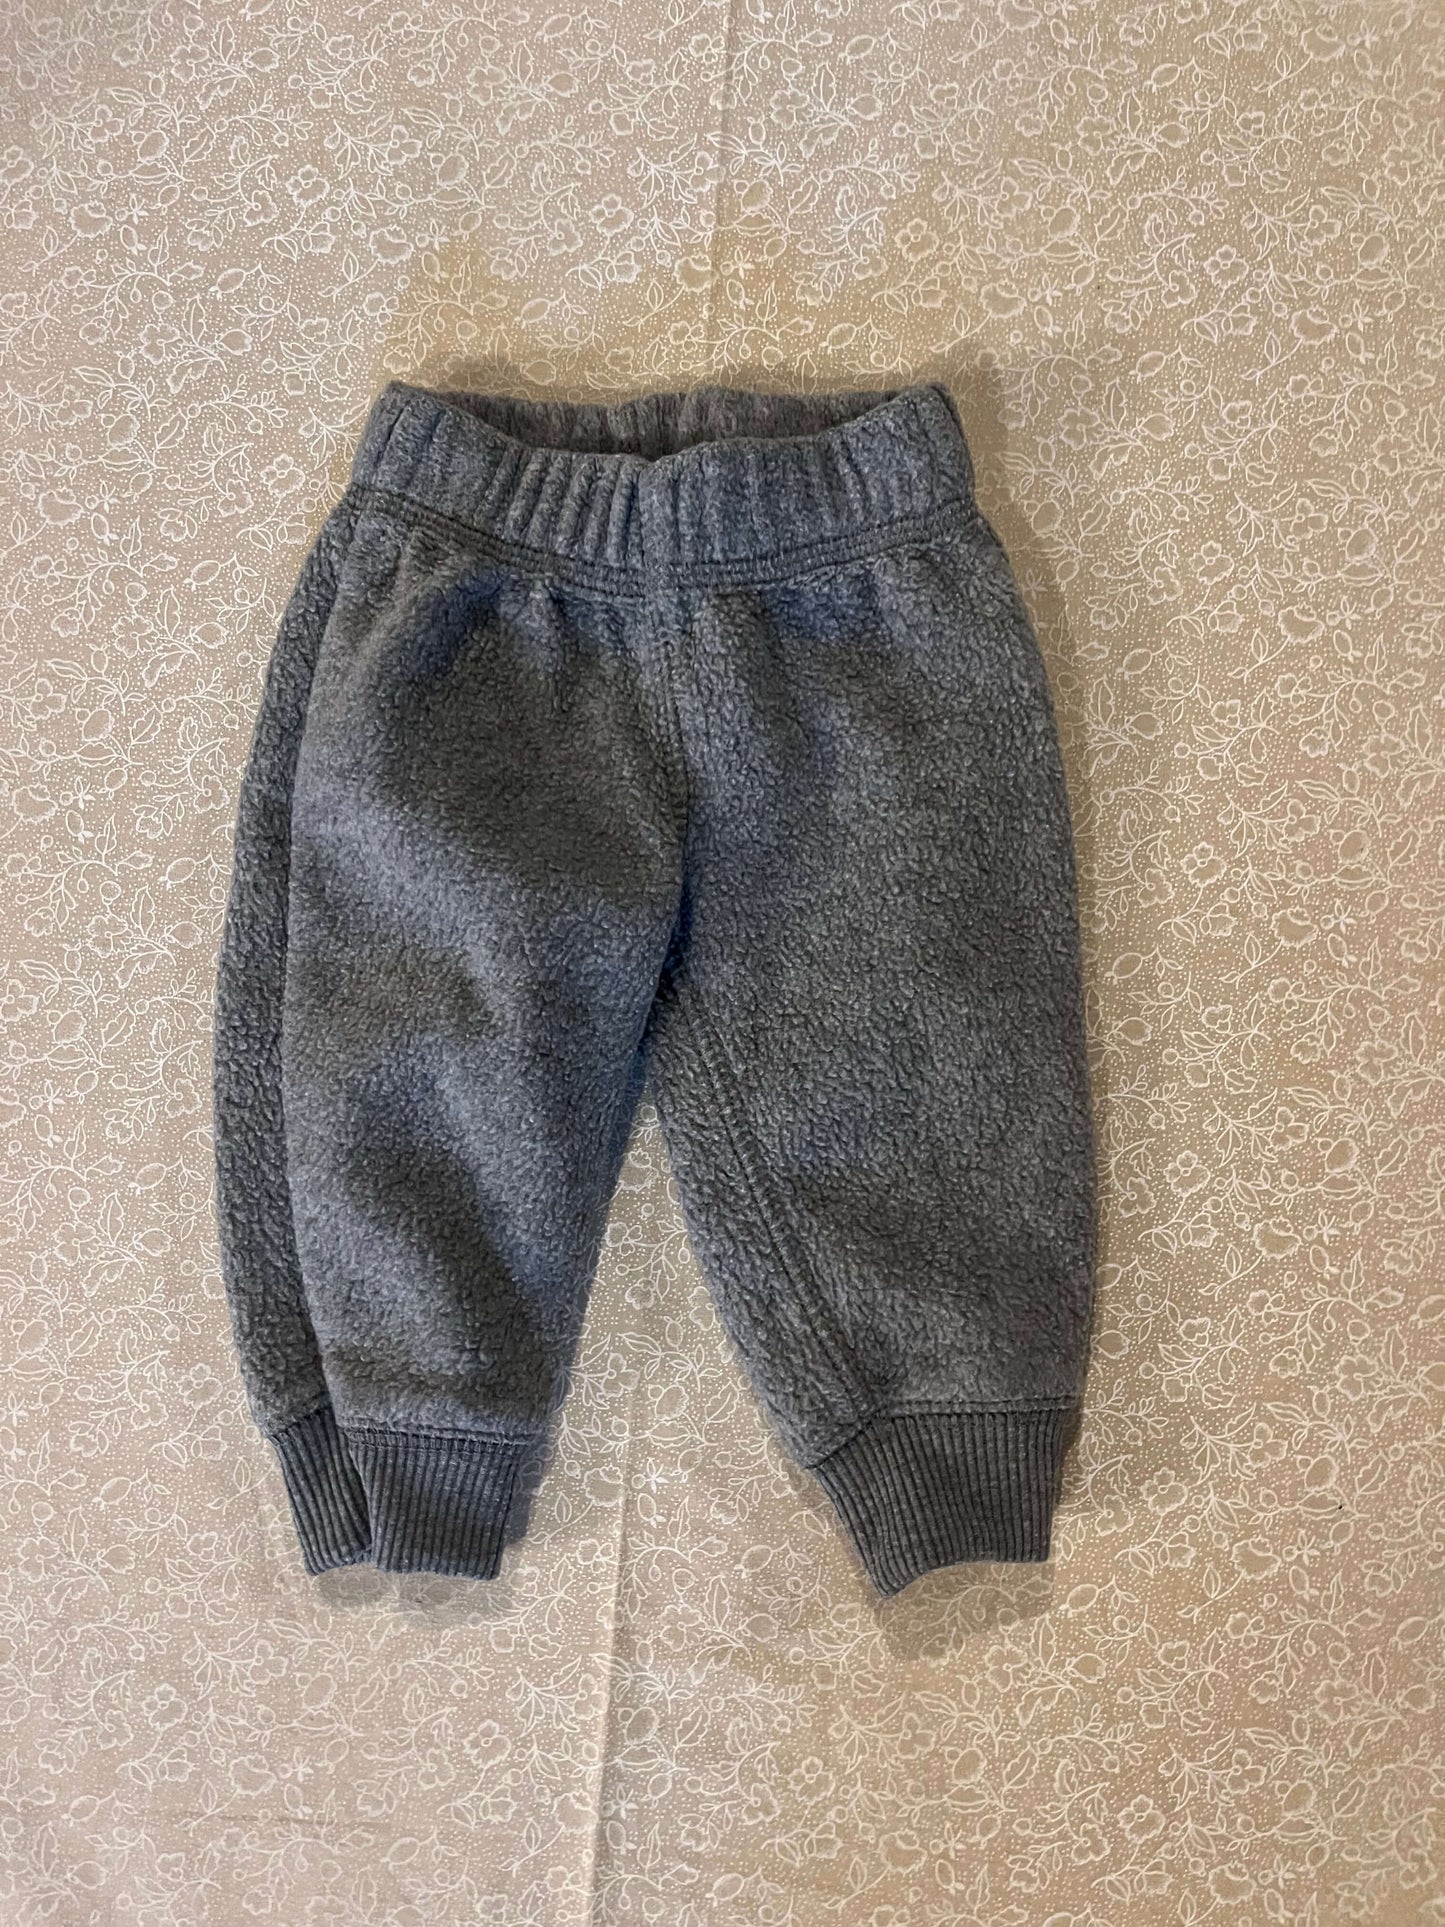 3-month-pants-carters-grey-fleece